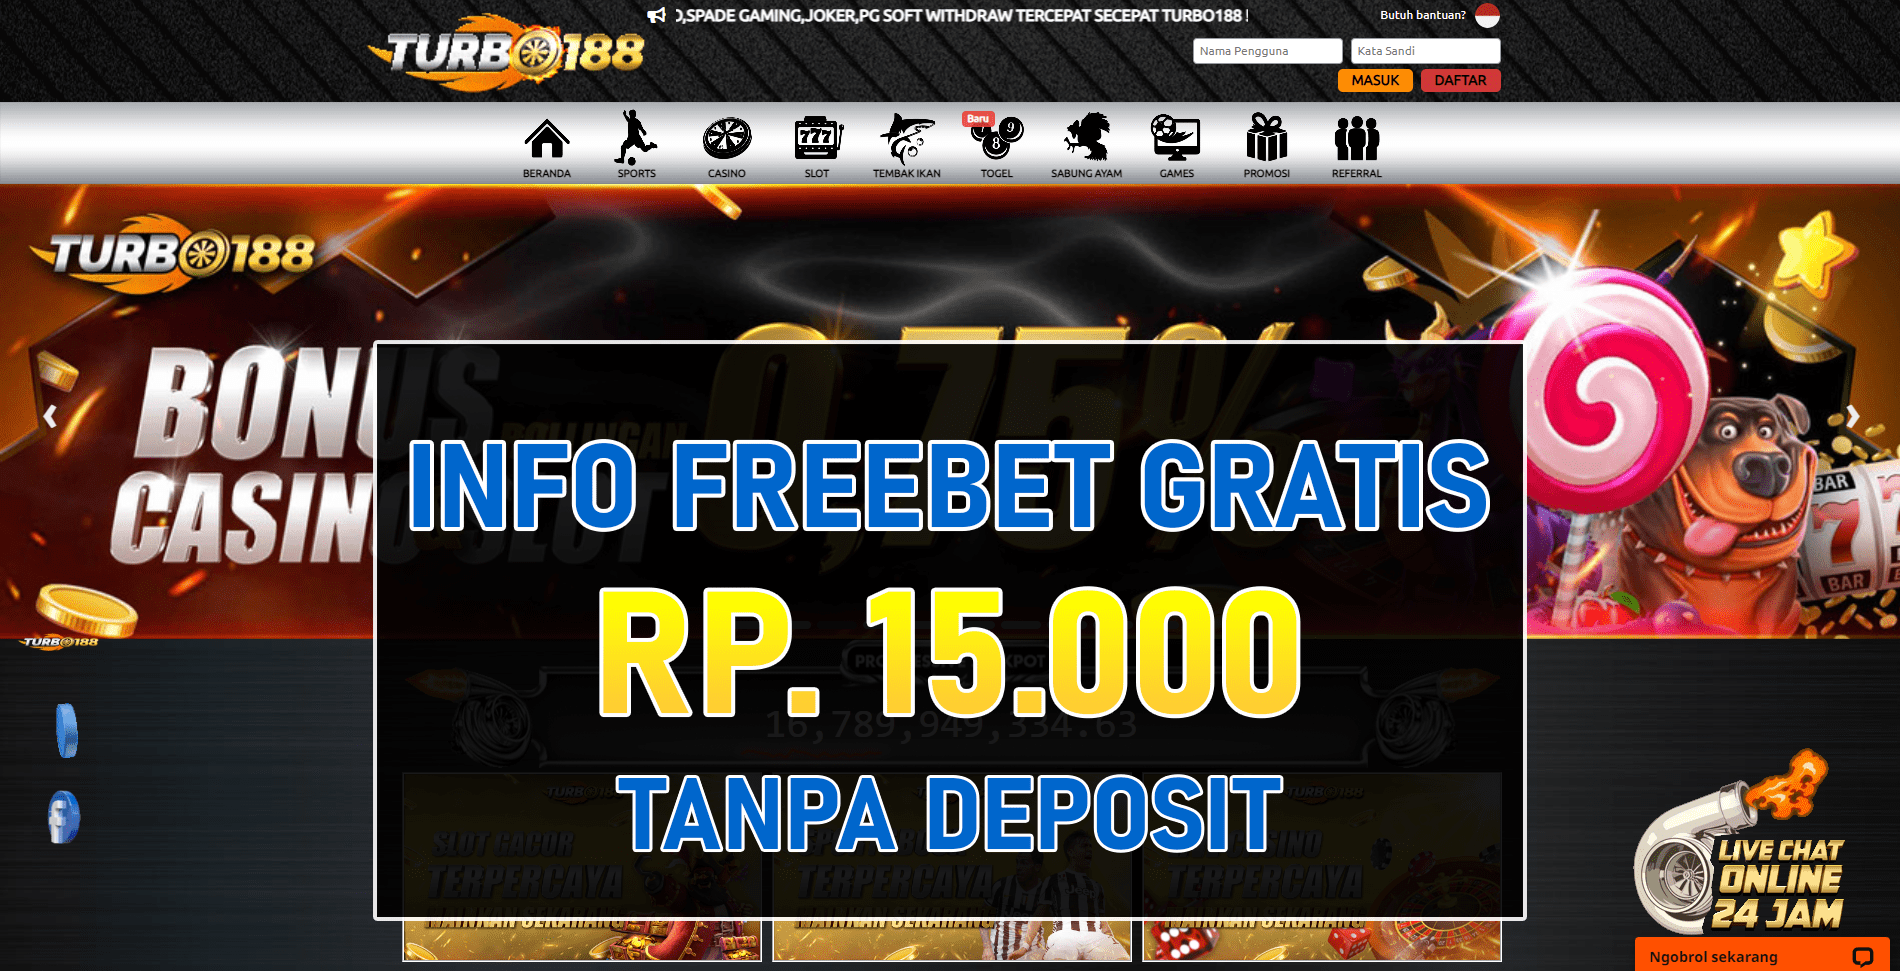 Turbo188 Freebet Gratis Terbaru Tanpa Deposit